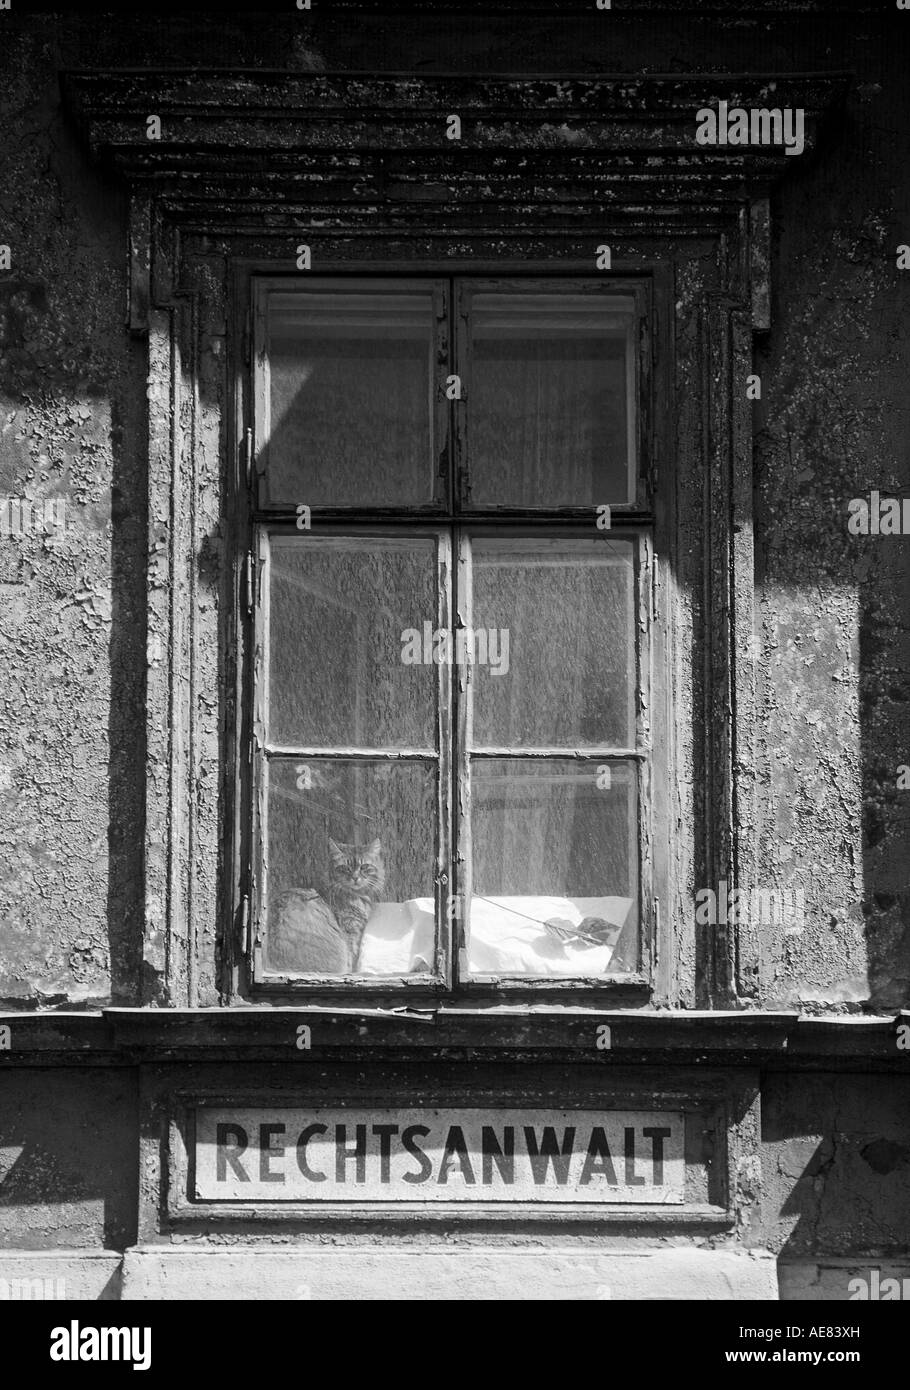 Un chat est à la recherche à partir de la fenêtre d'une vieille maison. La fenêtre ci-dessous est un signe placé qui dit "Rechtsanwalt" (procureur). Banque D'Images